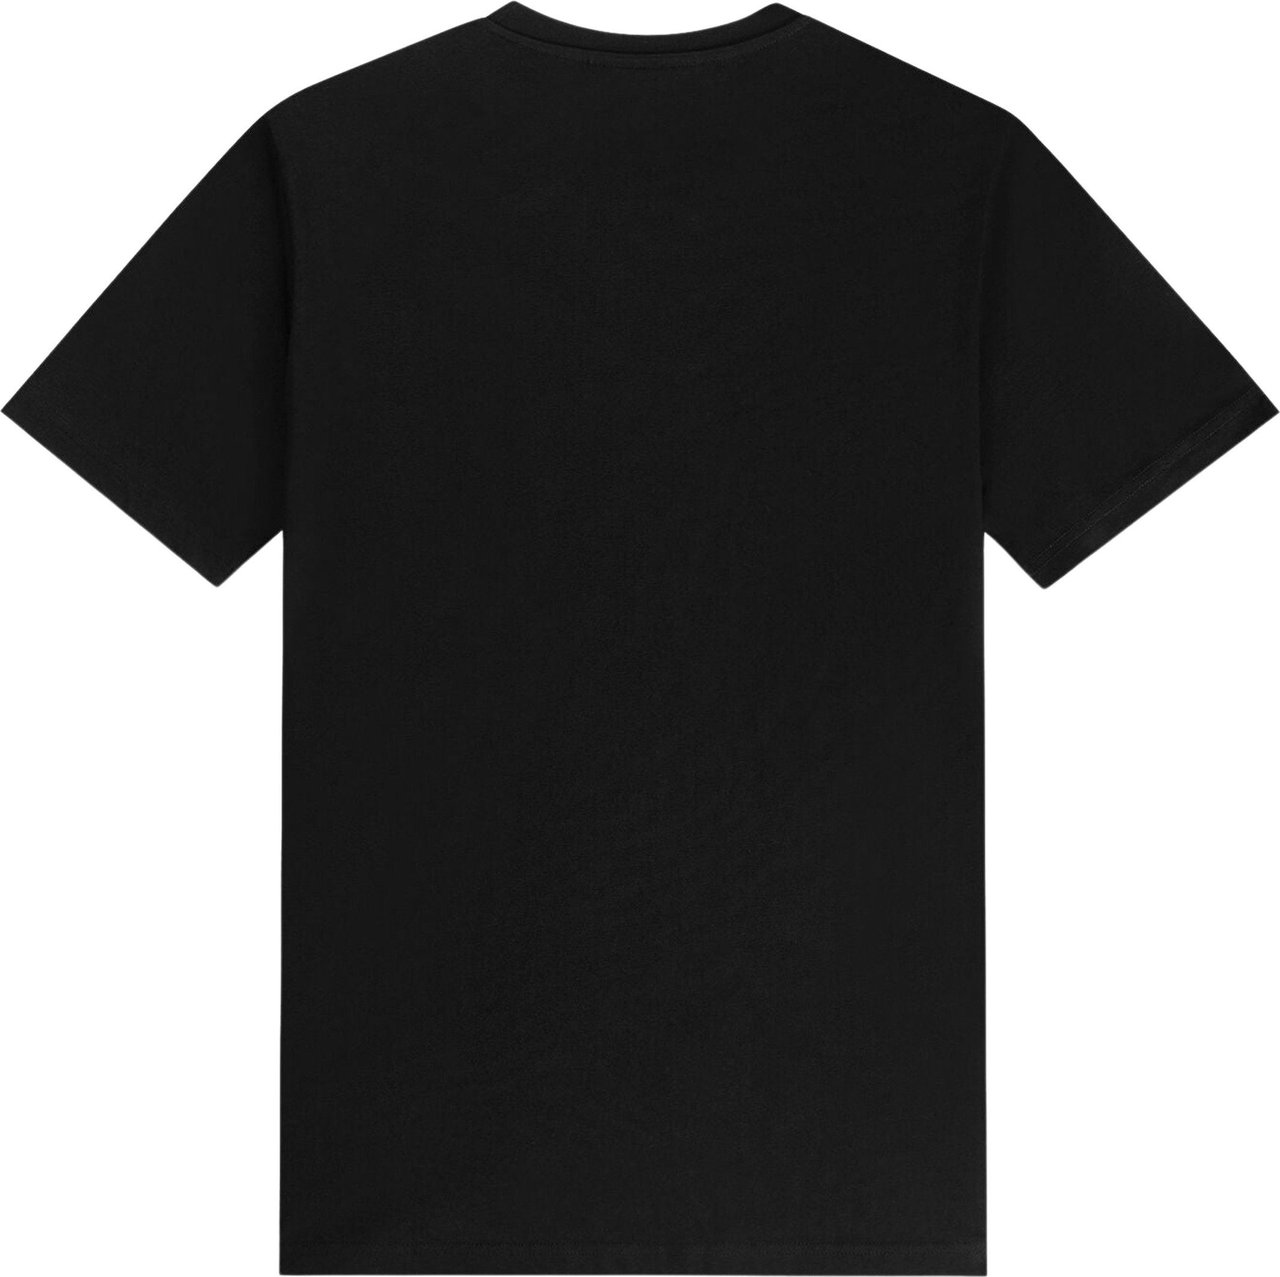 BALR Brand Regular Fit T-Shirt Zwart